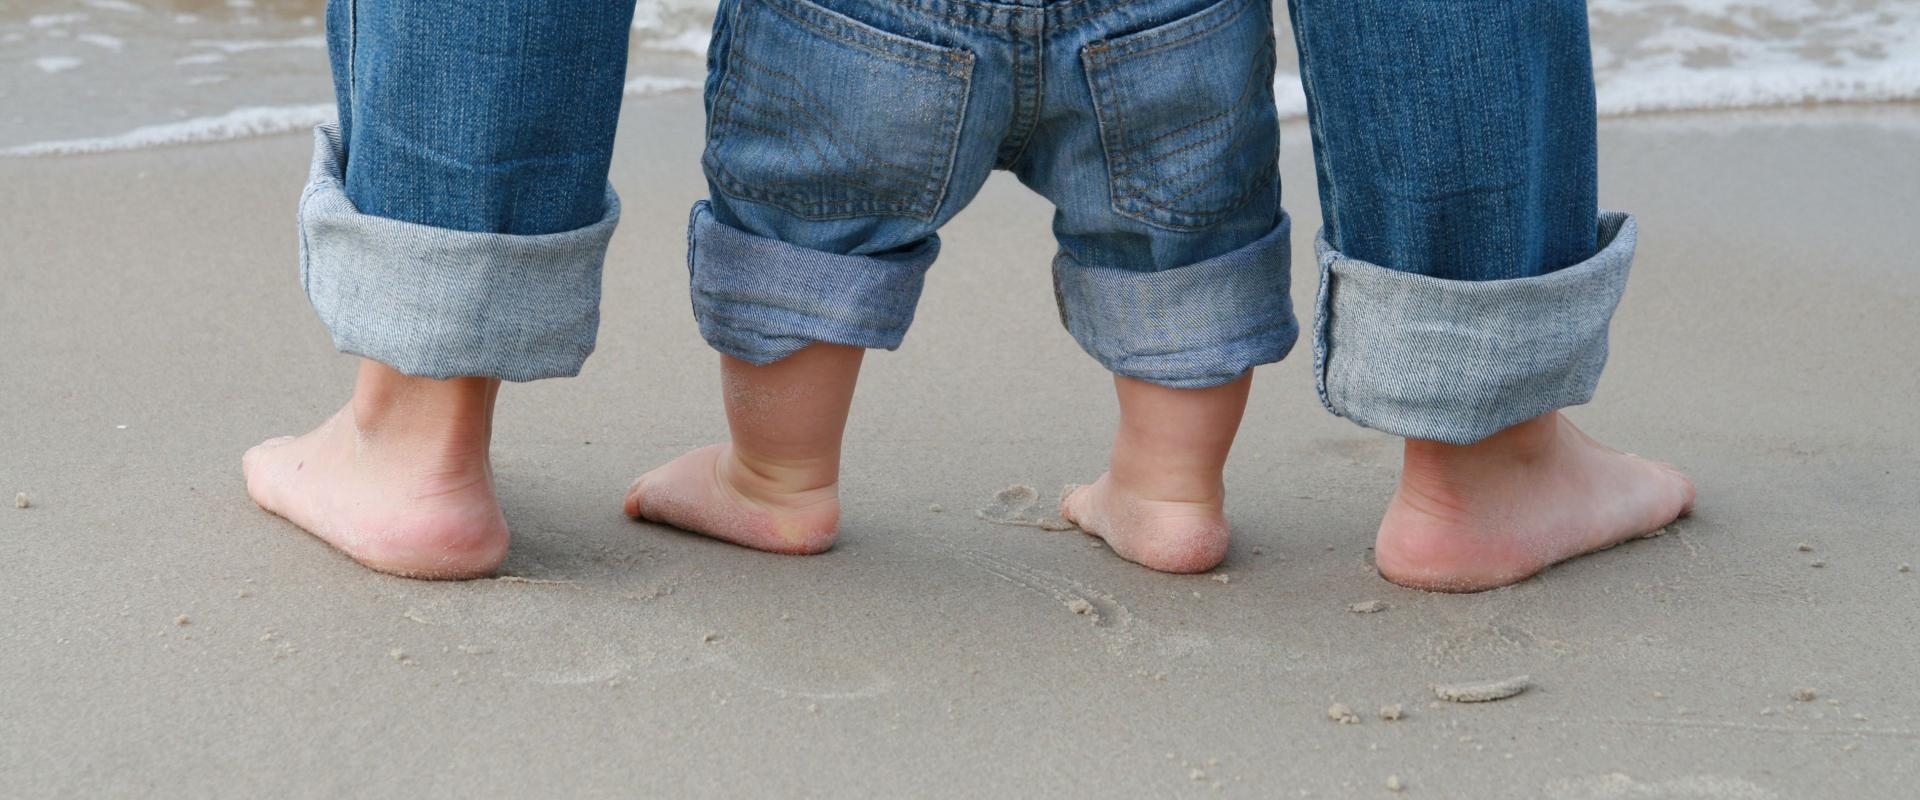 Füße einer erwachsenen Person und eines Kleinkindes im Sand